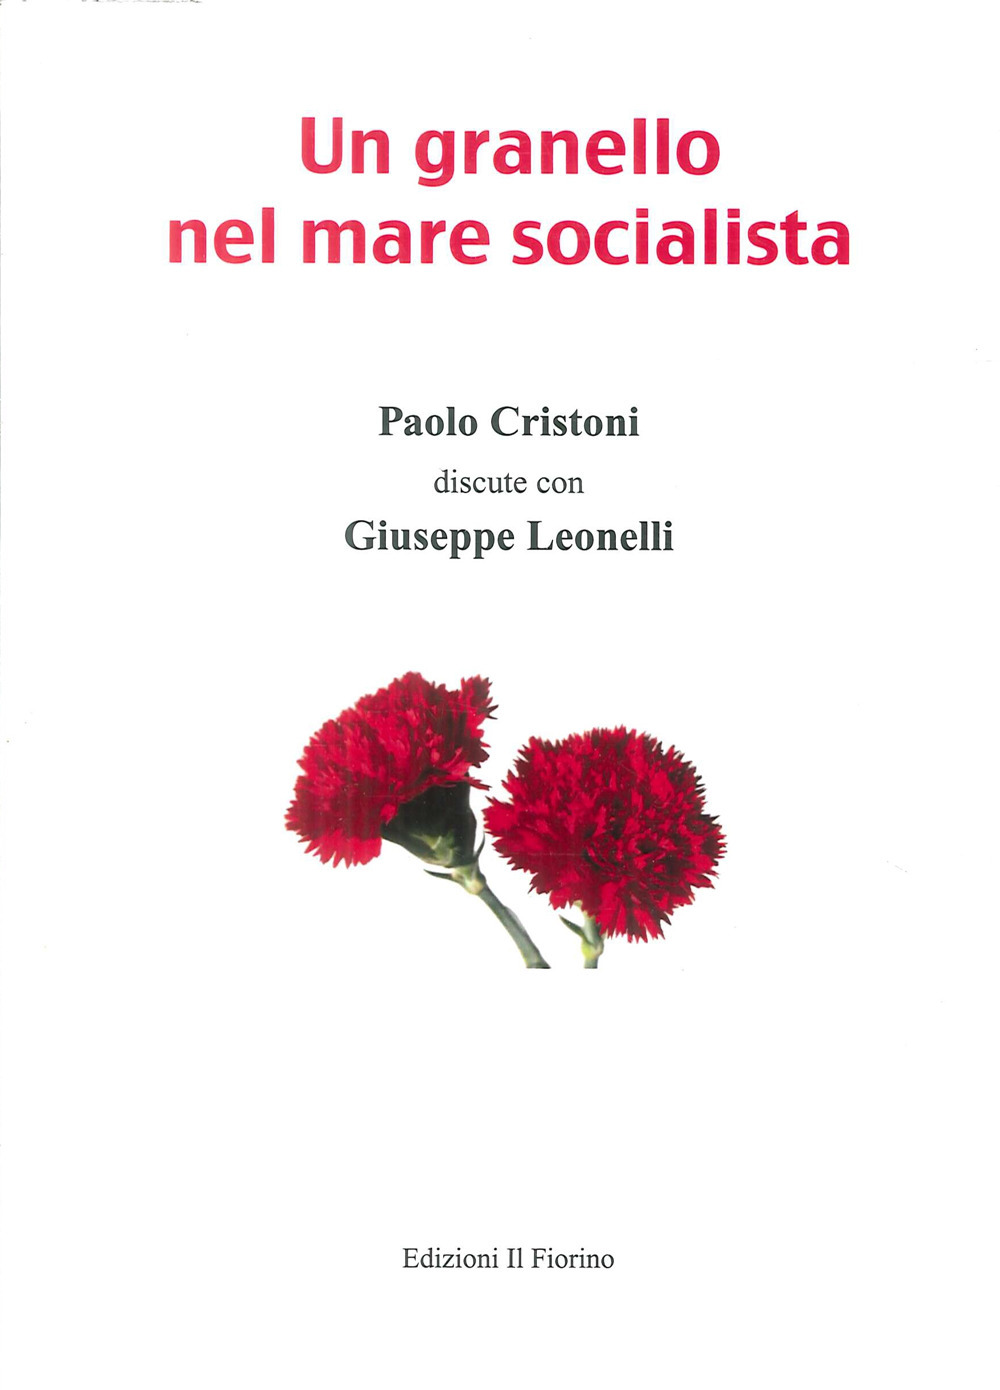 Un granello nel mare socialista. Paolo Cristoni discute con Giuseppe Leonelli